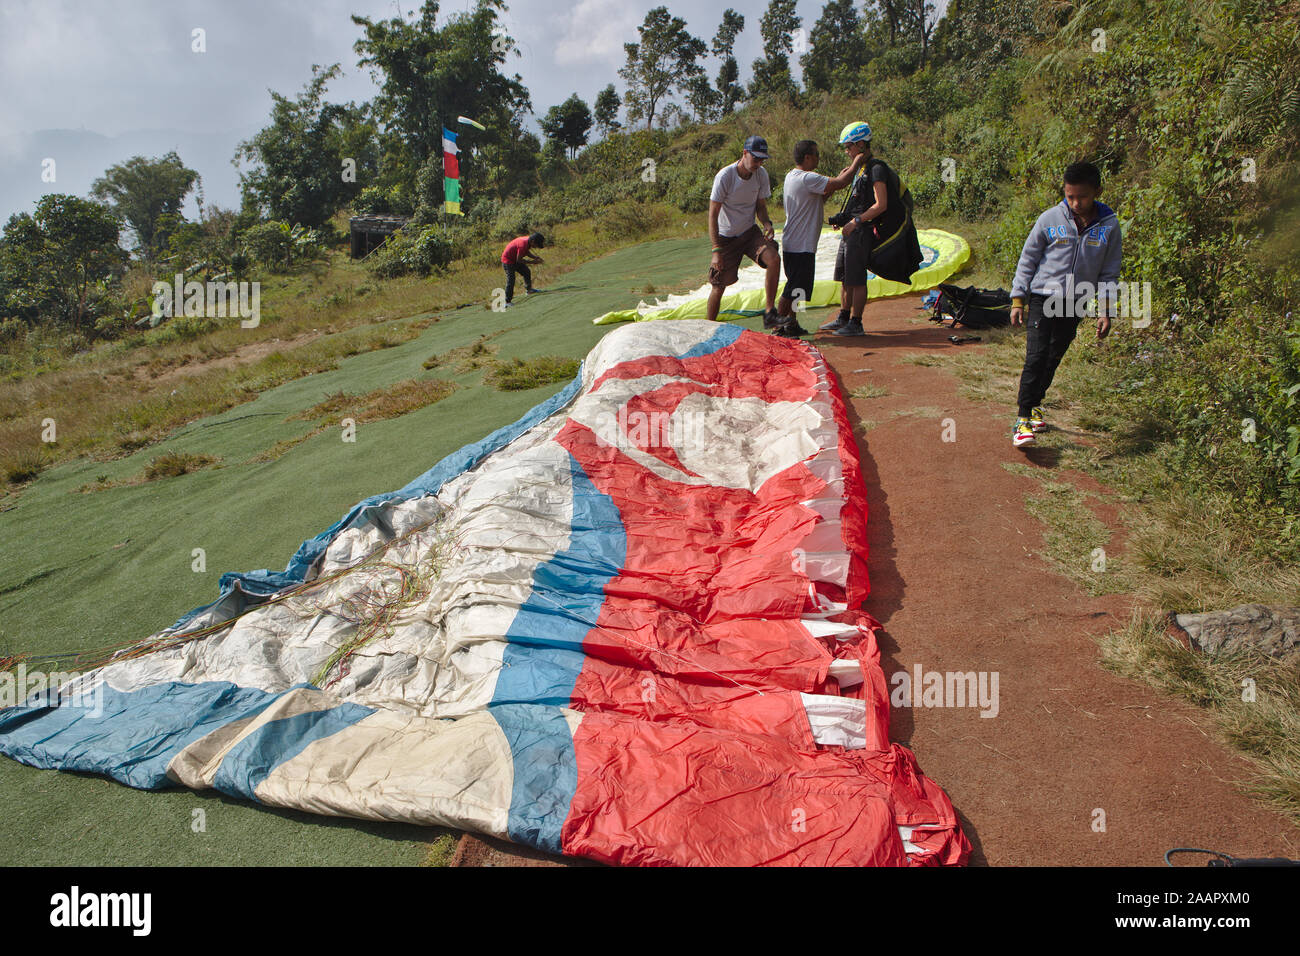 Fertig auf der Seite eines Hügels zu paragliden - Schießen ausbreiten Stockfoto